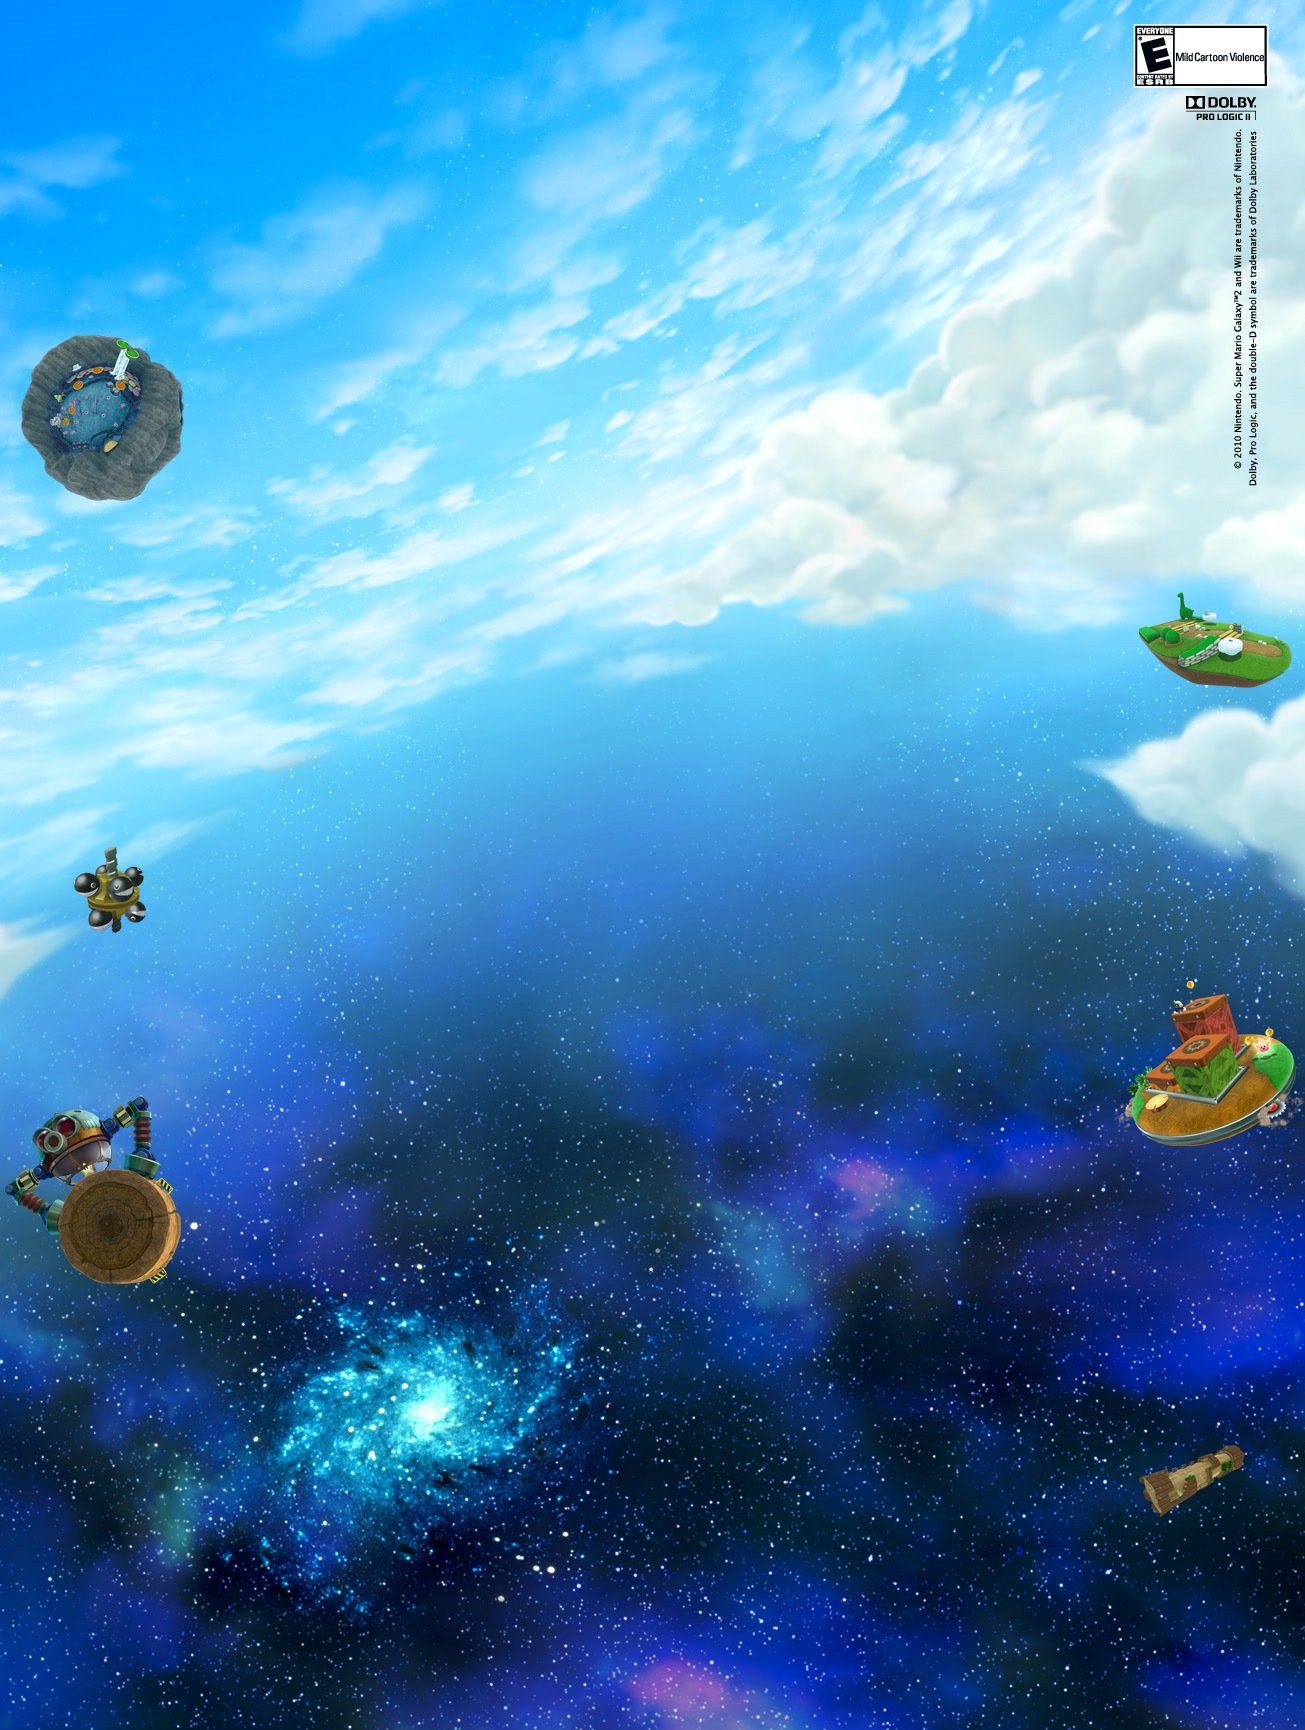 Super Mario Galaxy background images: Hình nền Super Mario Galaxy sẽ khiến bạn hoàn toàn yêu thích vũ trụ đầy phong cảnh tuyệt đẹp. Những hình ảnh đặc biệt này sẽ giúp bạn tạm quên đi những vấn đề hàng ngày và thư giãn cùng nhân vật siêu hấp dẫn này.